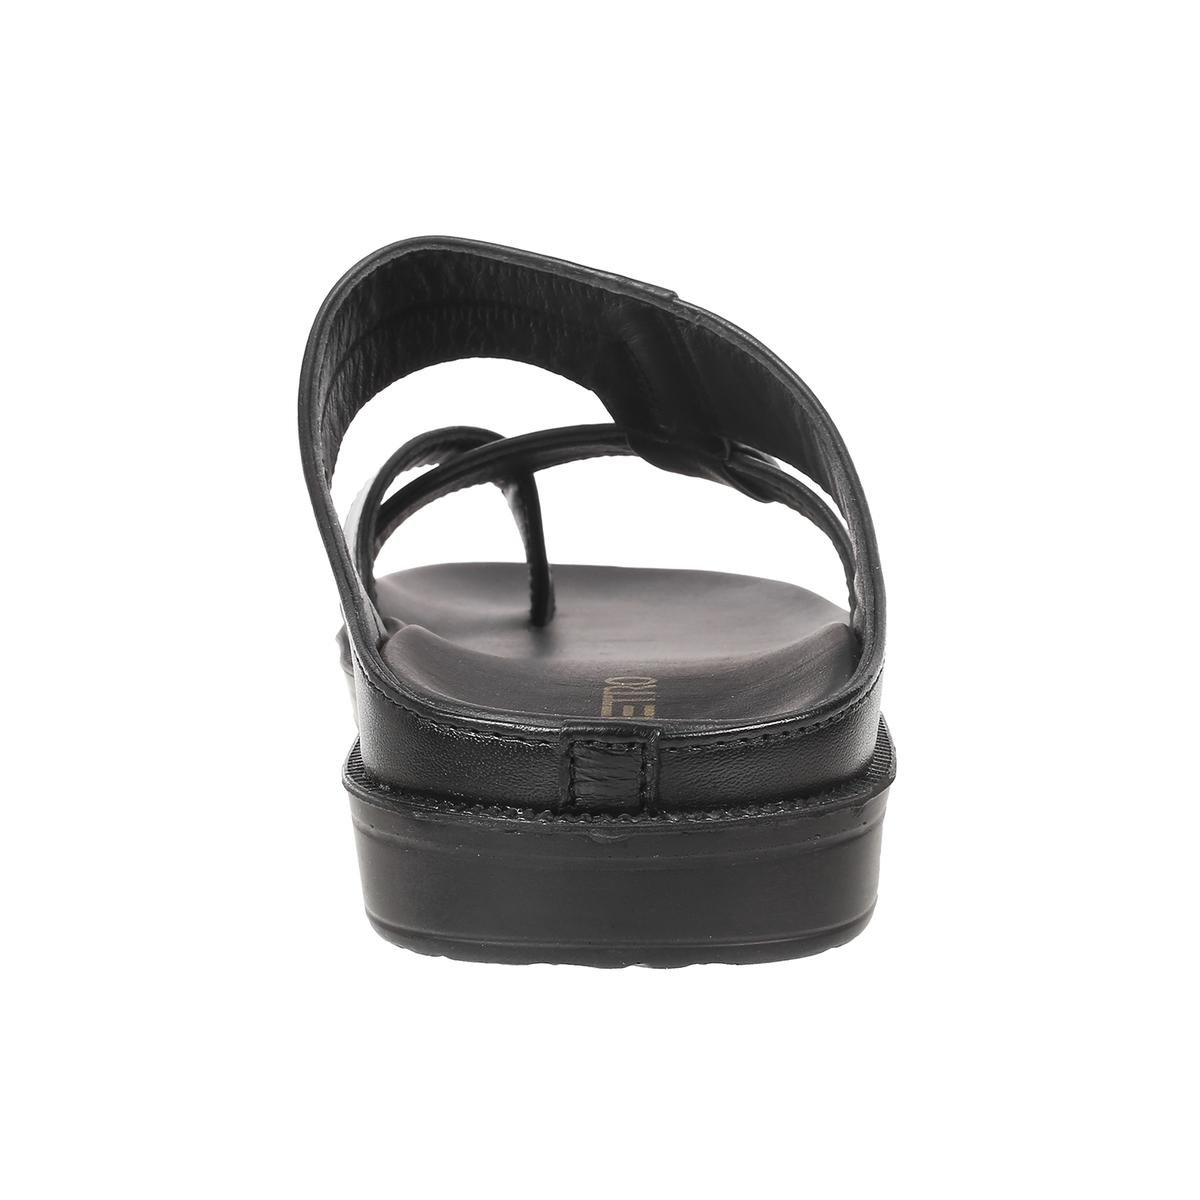 Buy Men Black Casual Slippers Online | SKU: 16-194-11-40-Metro Shoes